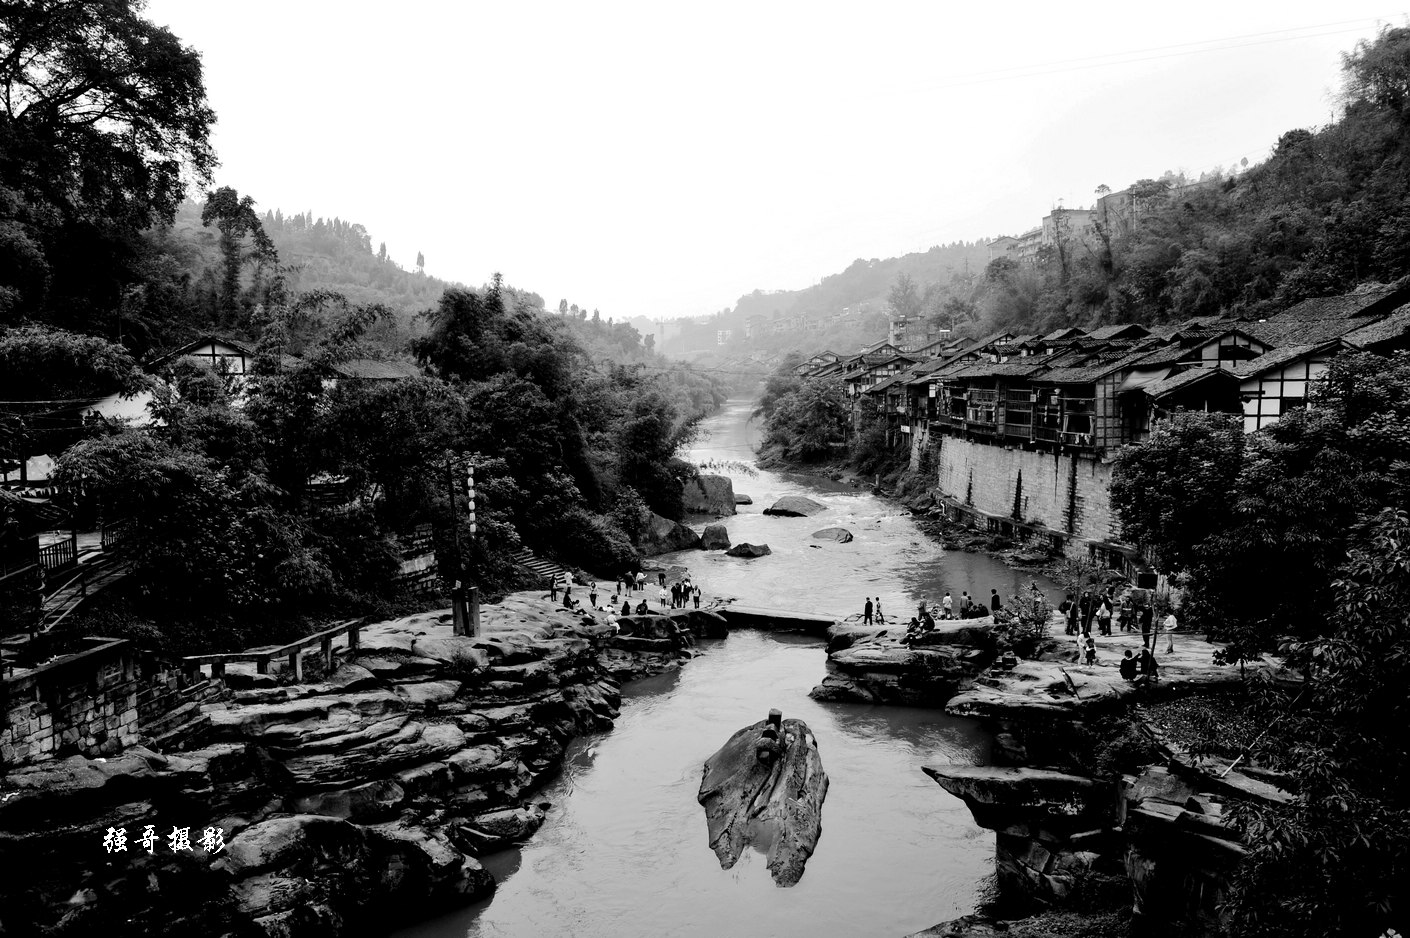 重庆中山古镇景象图片,图片,壁纸,自然风景-桌酷